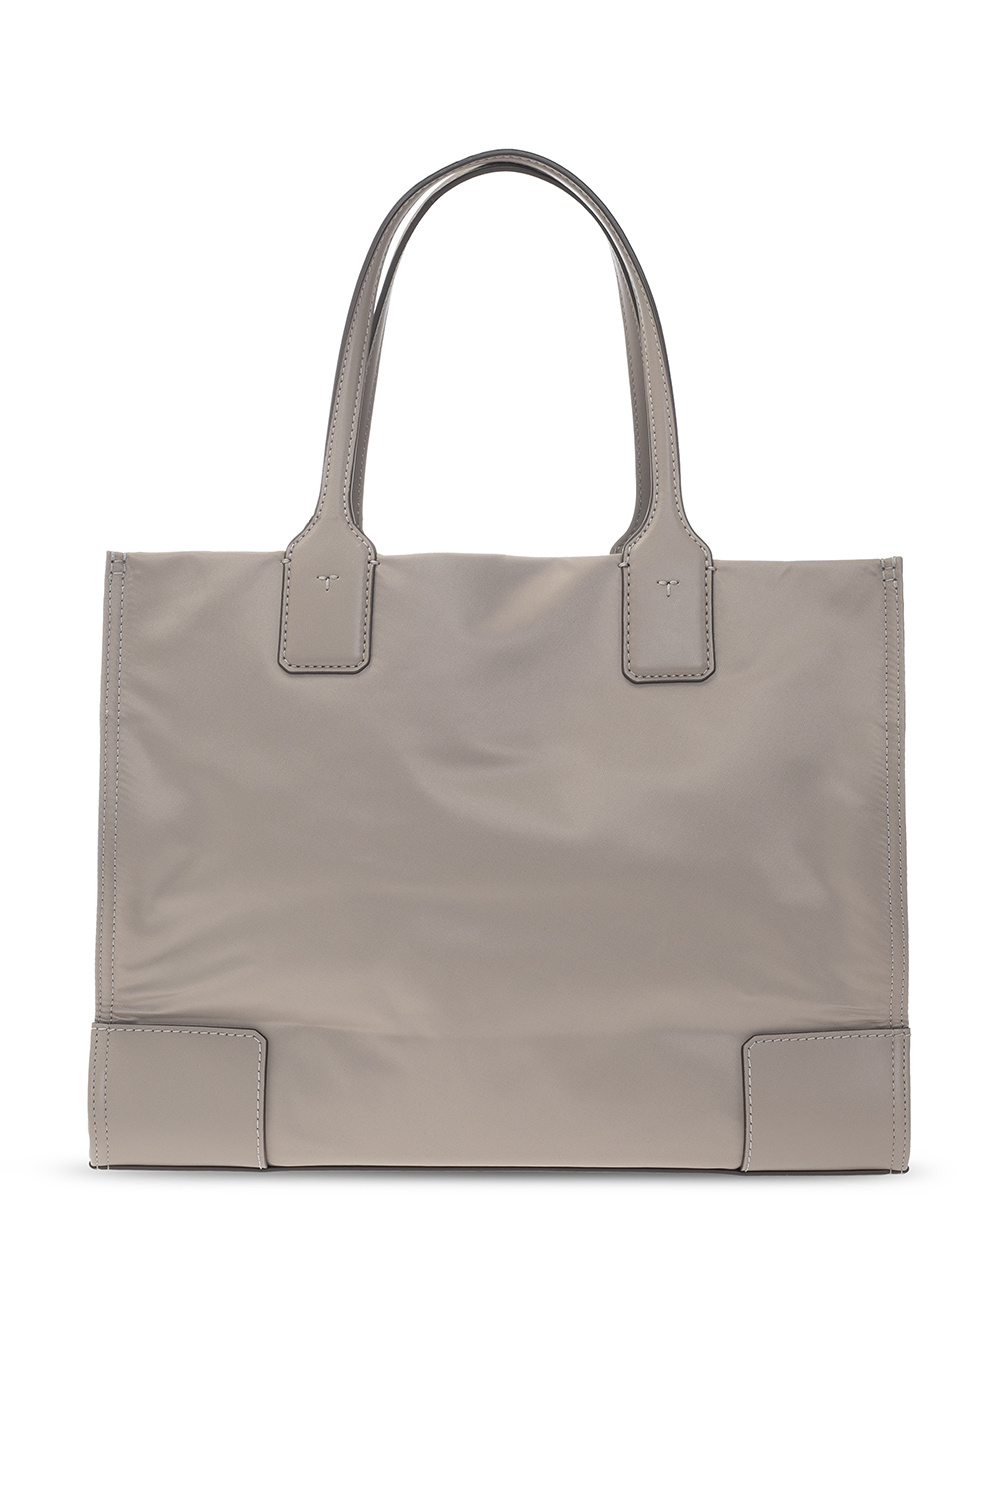 Tory Burch ‘Ella Mini’ shopper bag